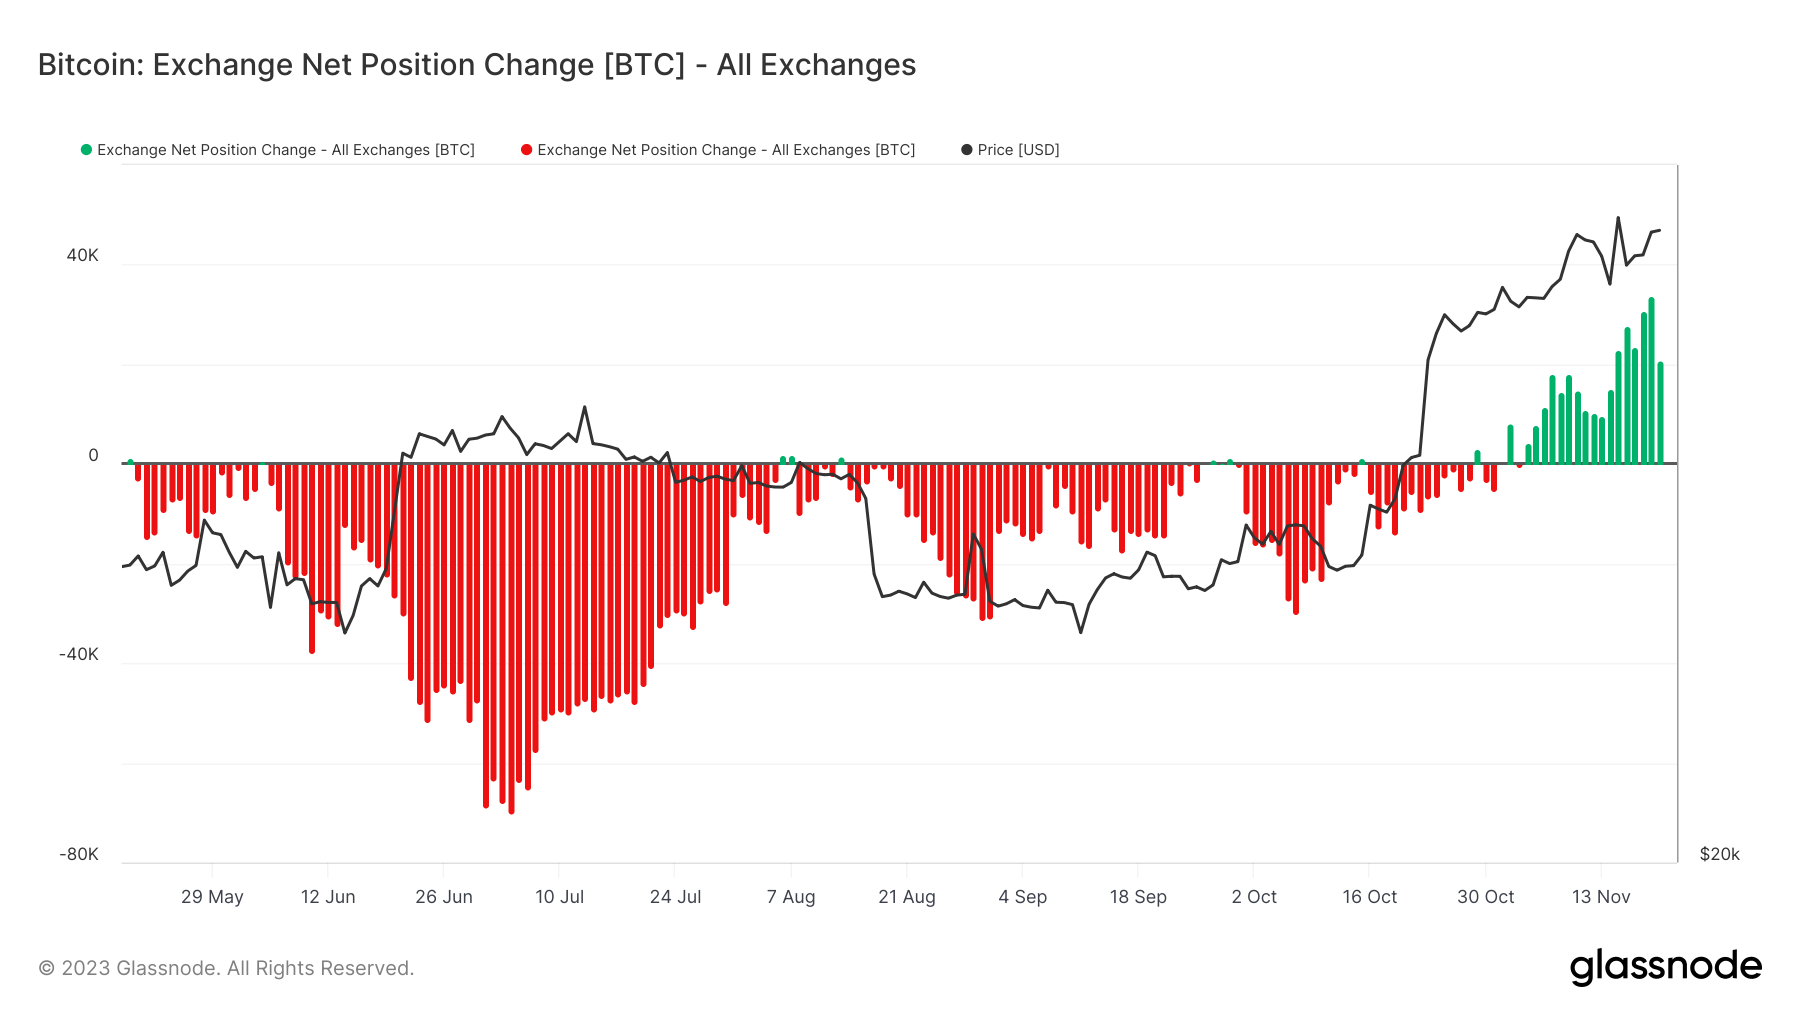 exchange net position change may november